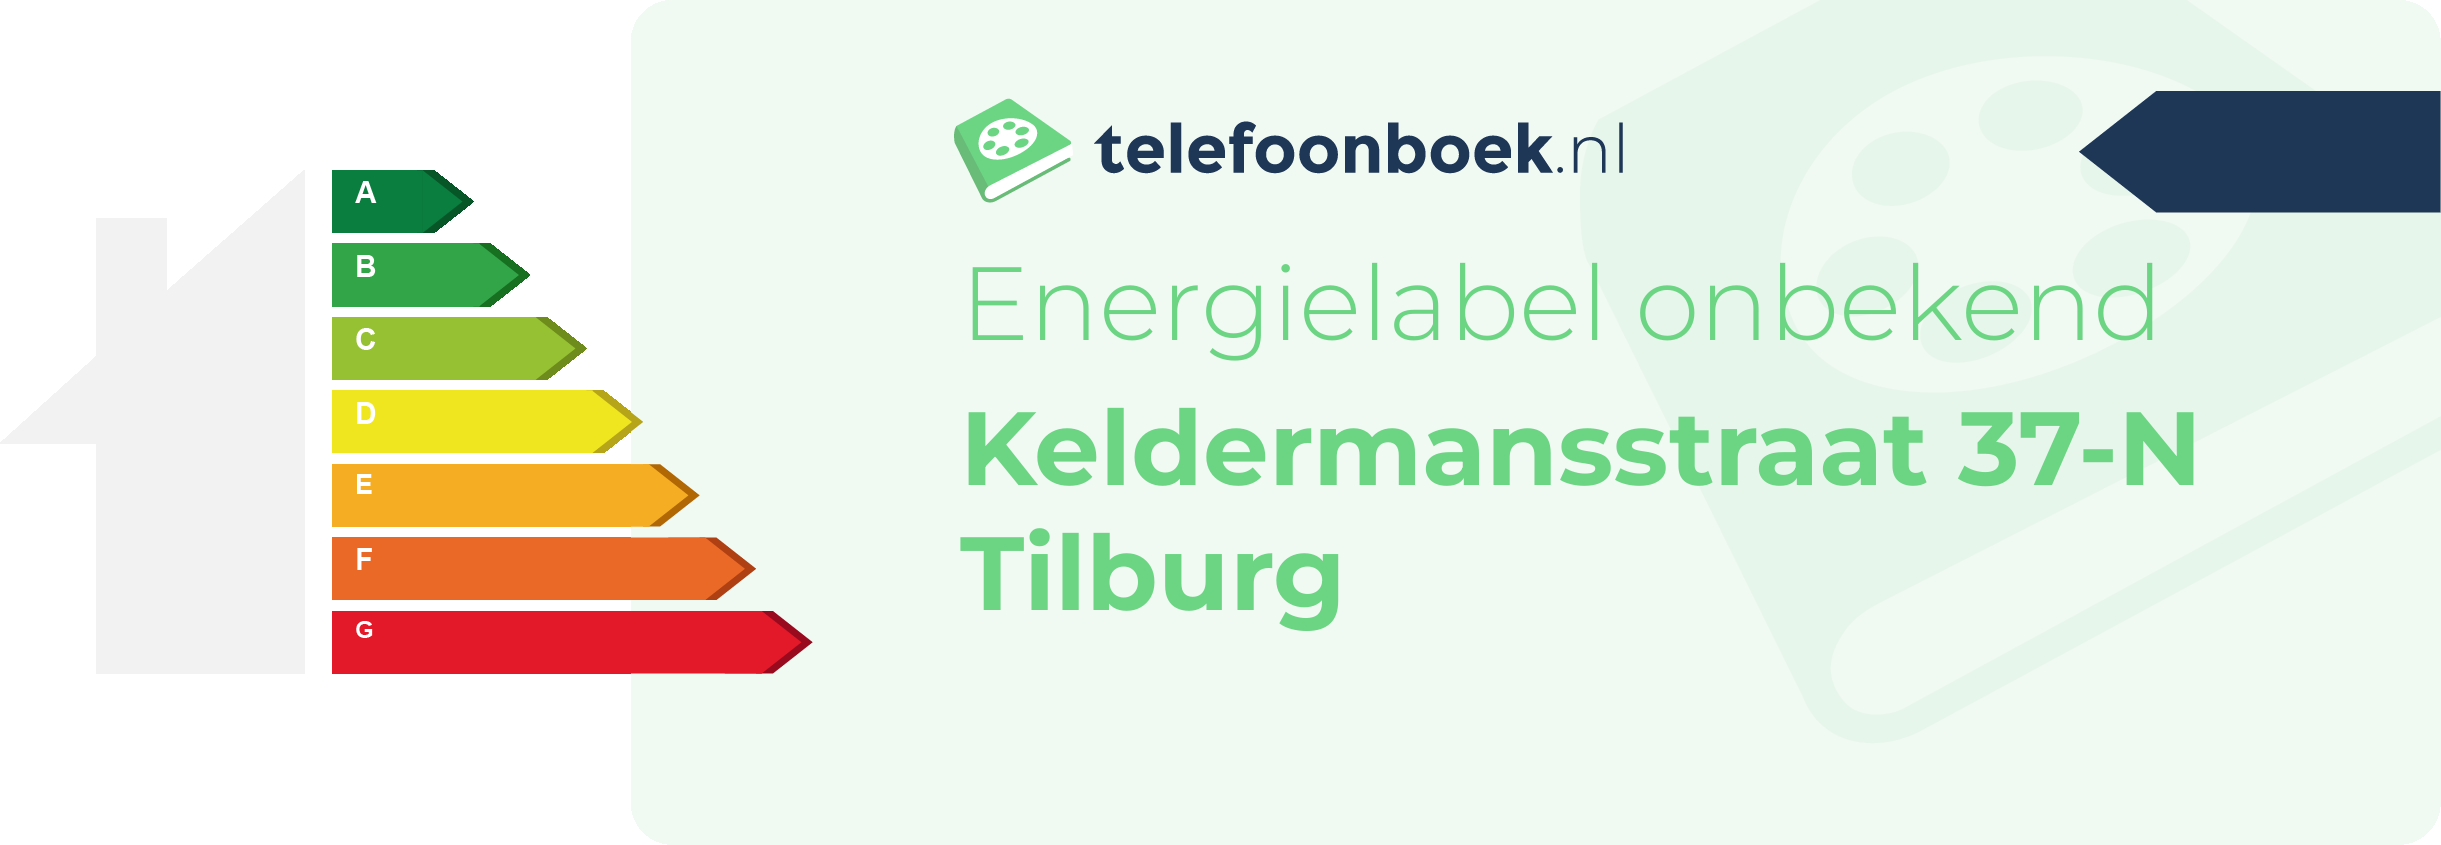 Energielabel Keldermansstraat 37-N Tilburg